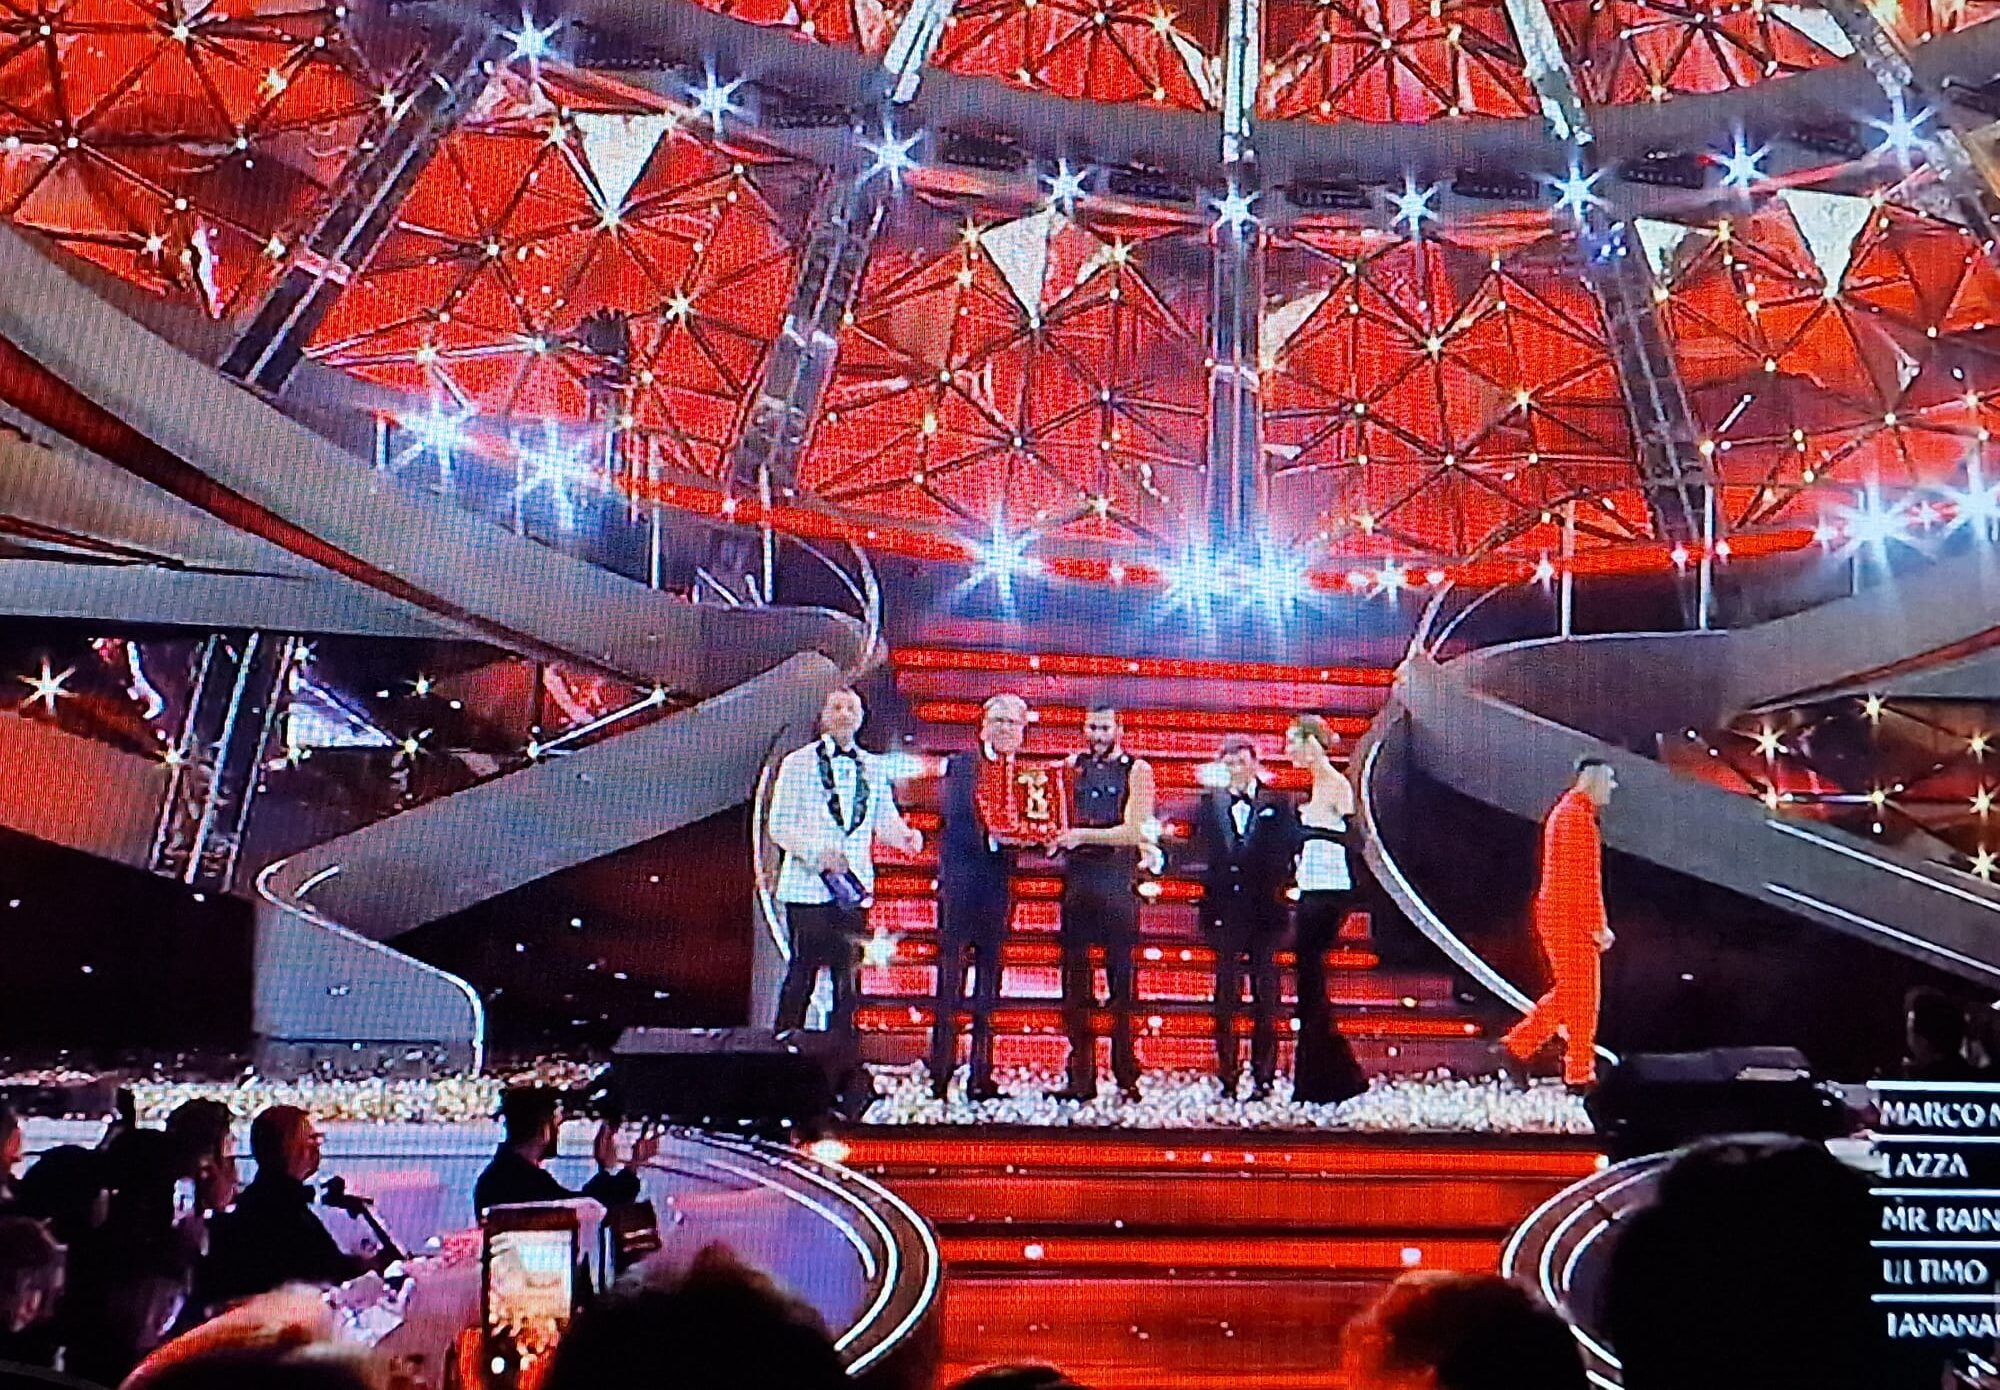 Festival di Sanremo, Marco Mengoni vince la 73esima edizione della kermesse musicale